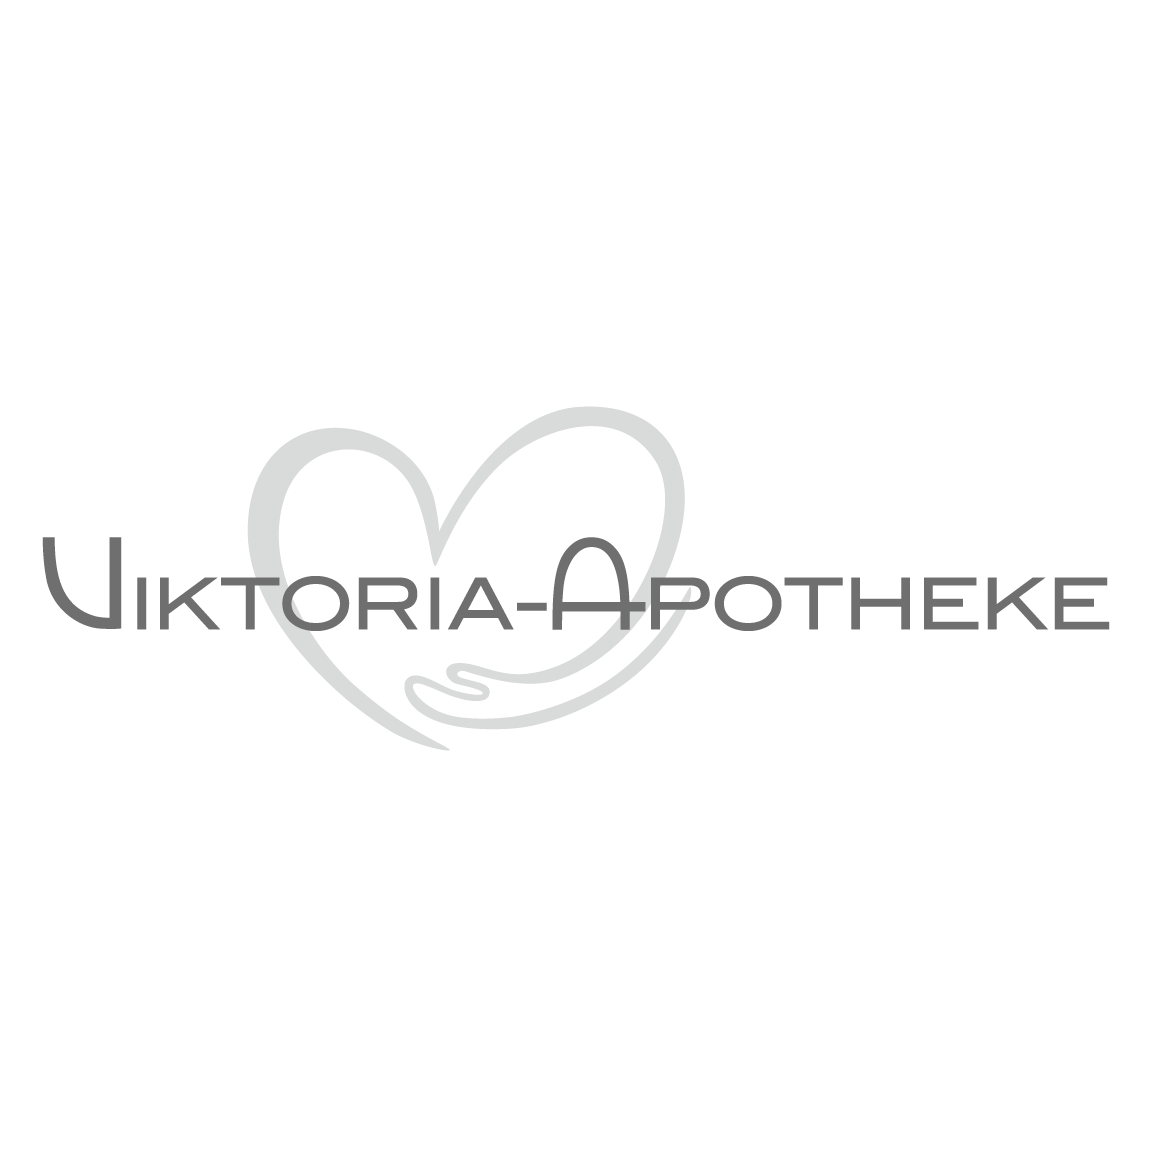 Viktoria-Apotheke Logo